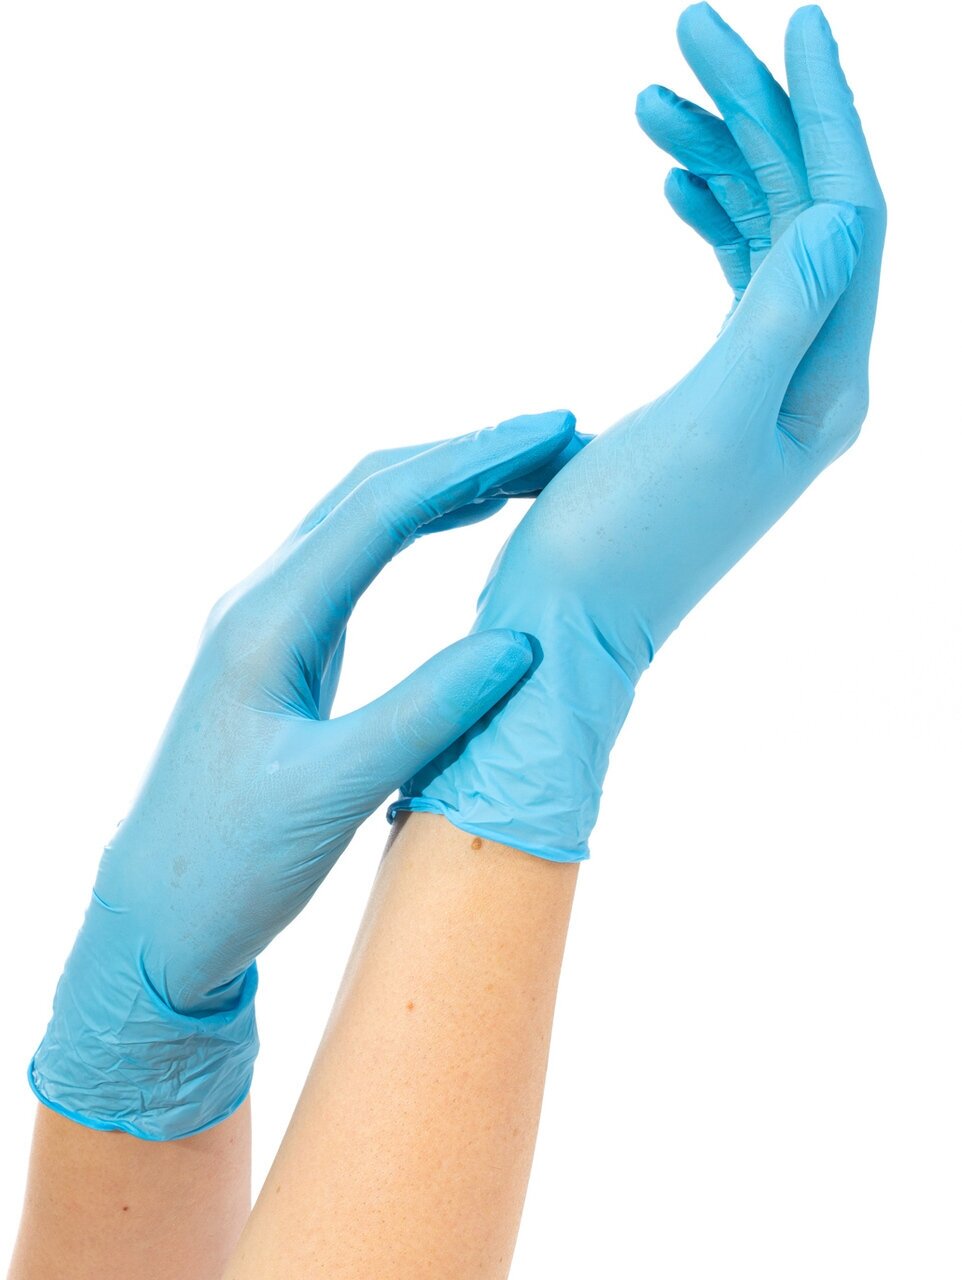 Перчатки одноразовые нитриловые голубые NITRILE Cloves, размер M,150 пар.